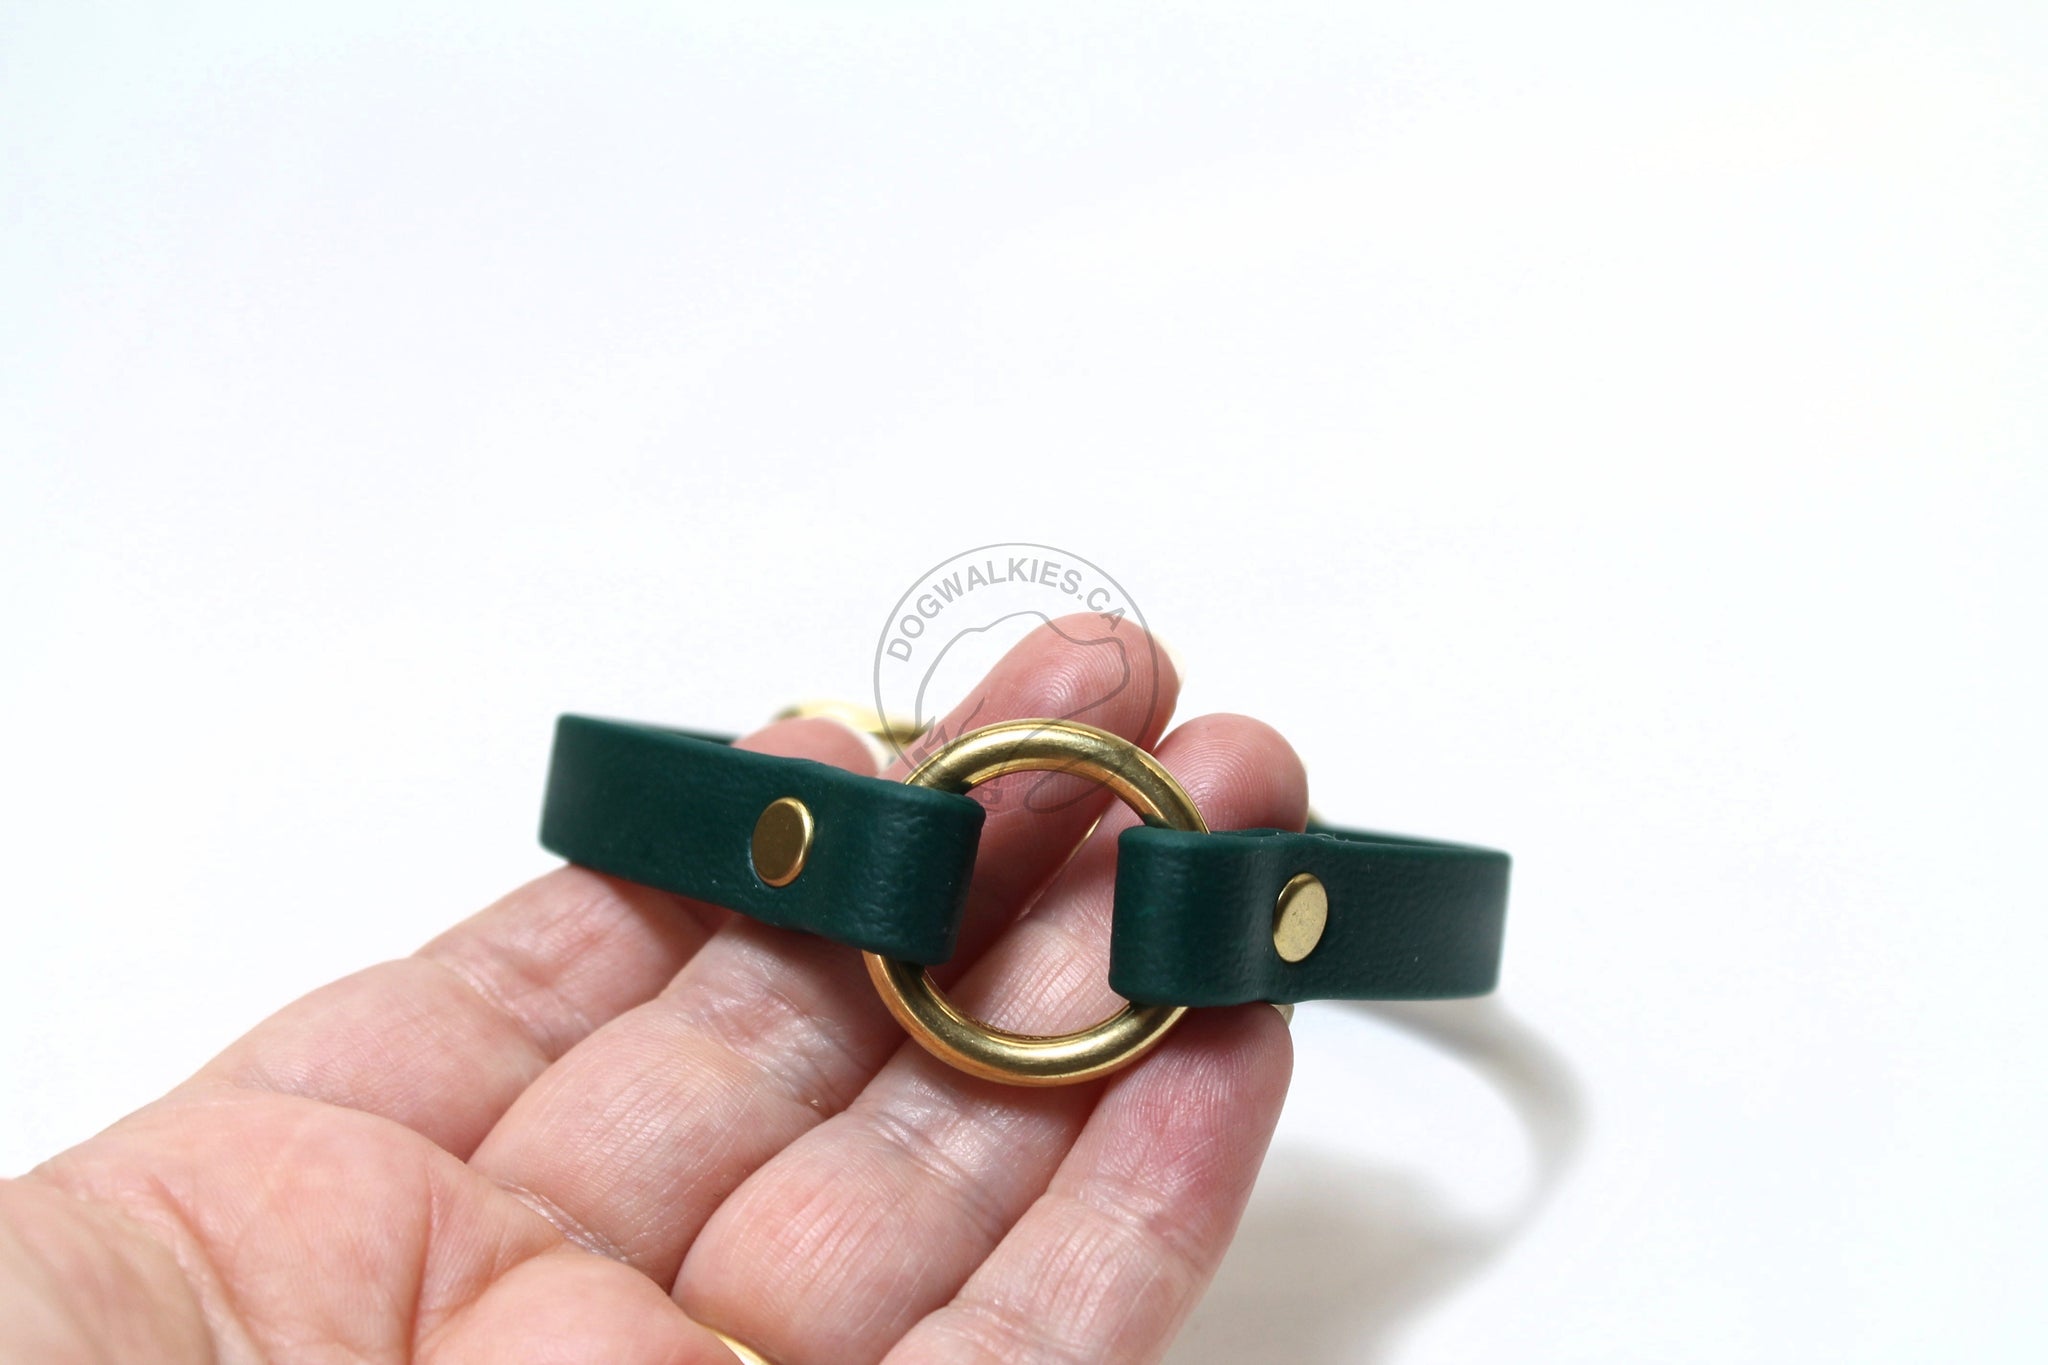 Buckle O-ring Tag Dog Collar in Genuine Biothane - 12mm (1/2") width - O Ring Collar